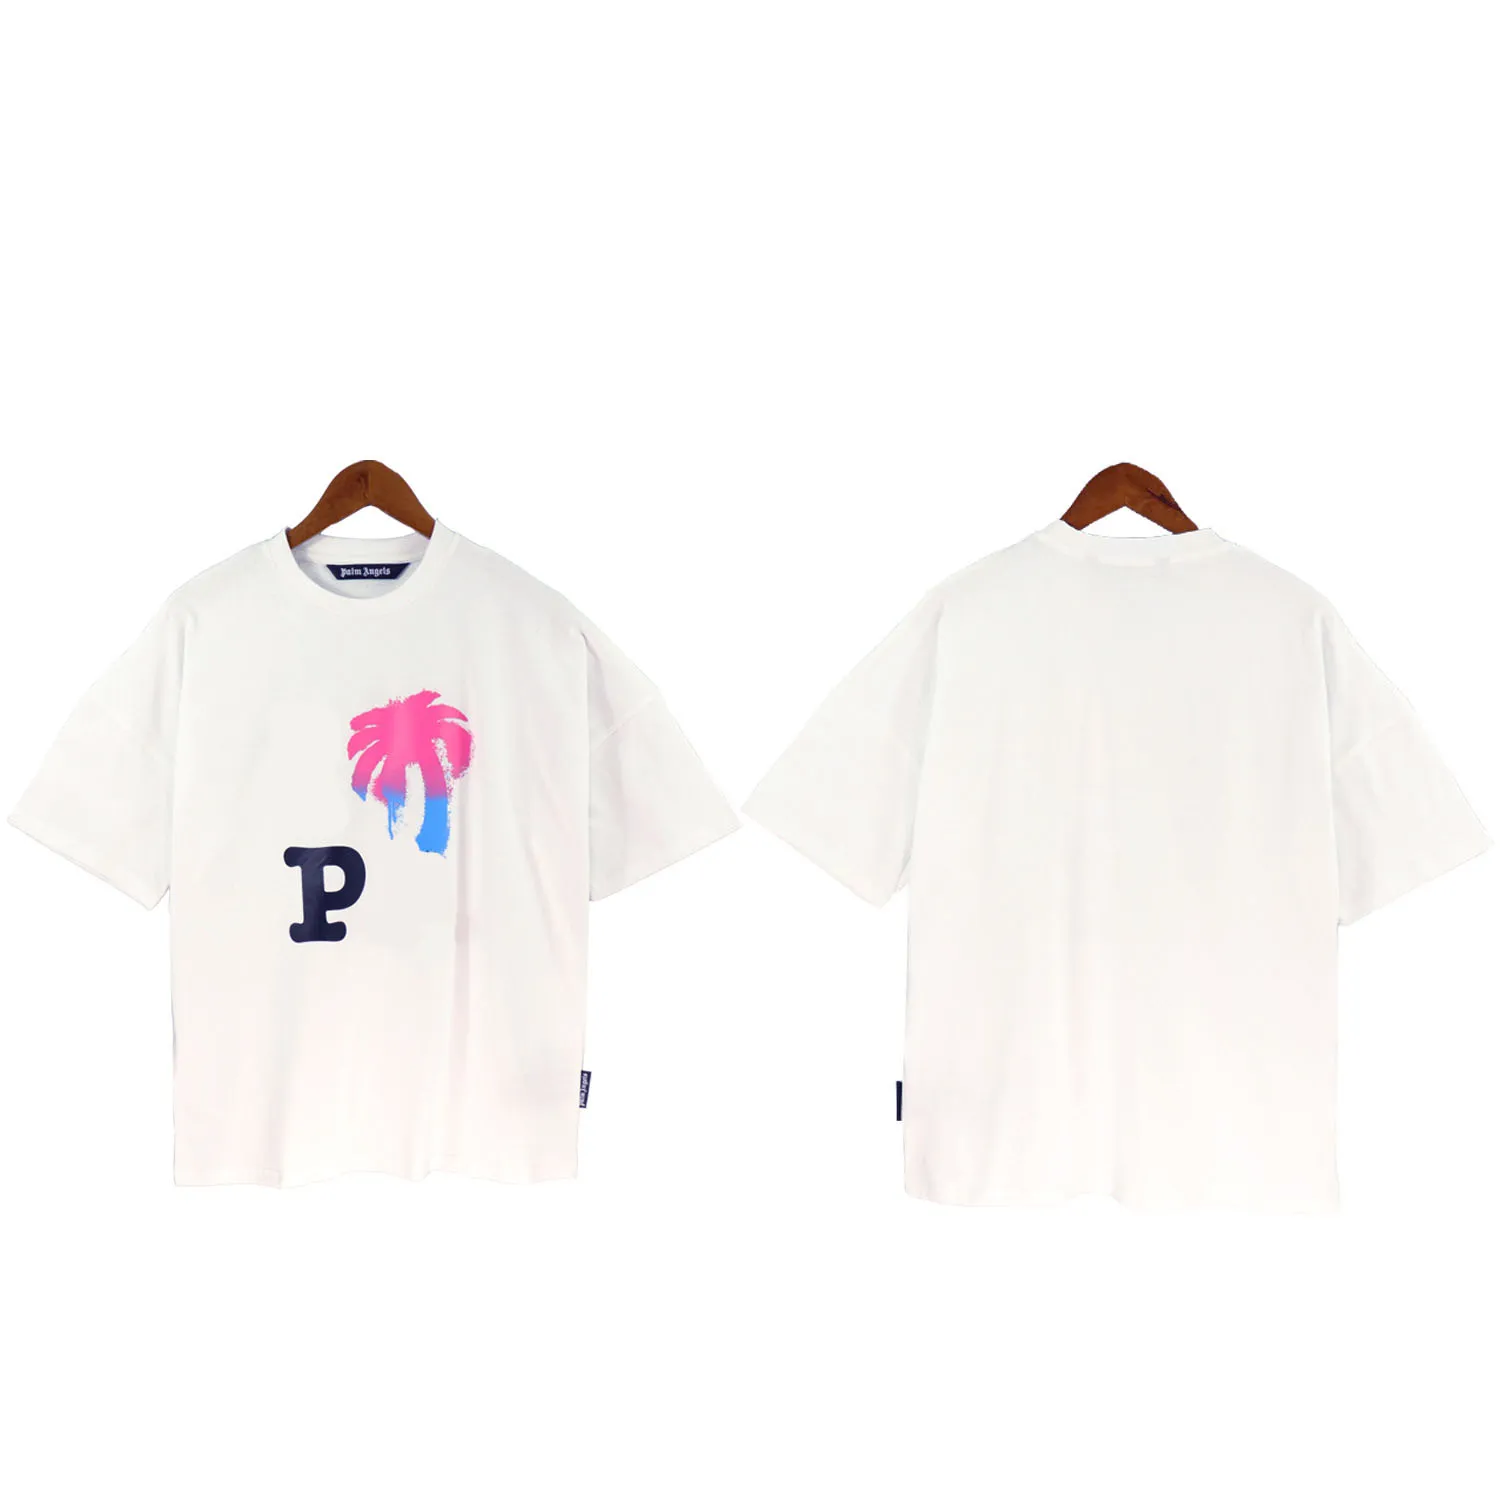 мужская и женская футболка дизайнерская рубашка женская футболка Спортивная одежда хлопок Уличный граффити Хипстер Хай-стрит Свободный крой плюс футболка GLES